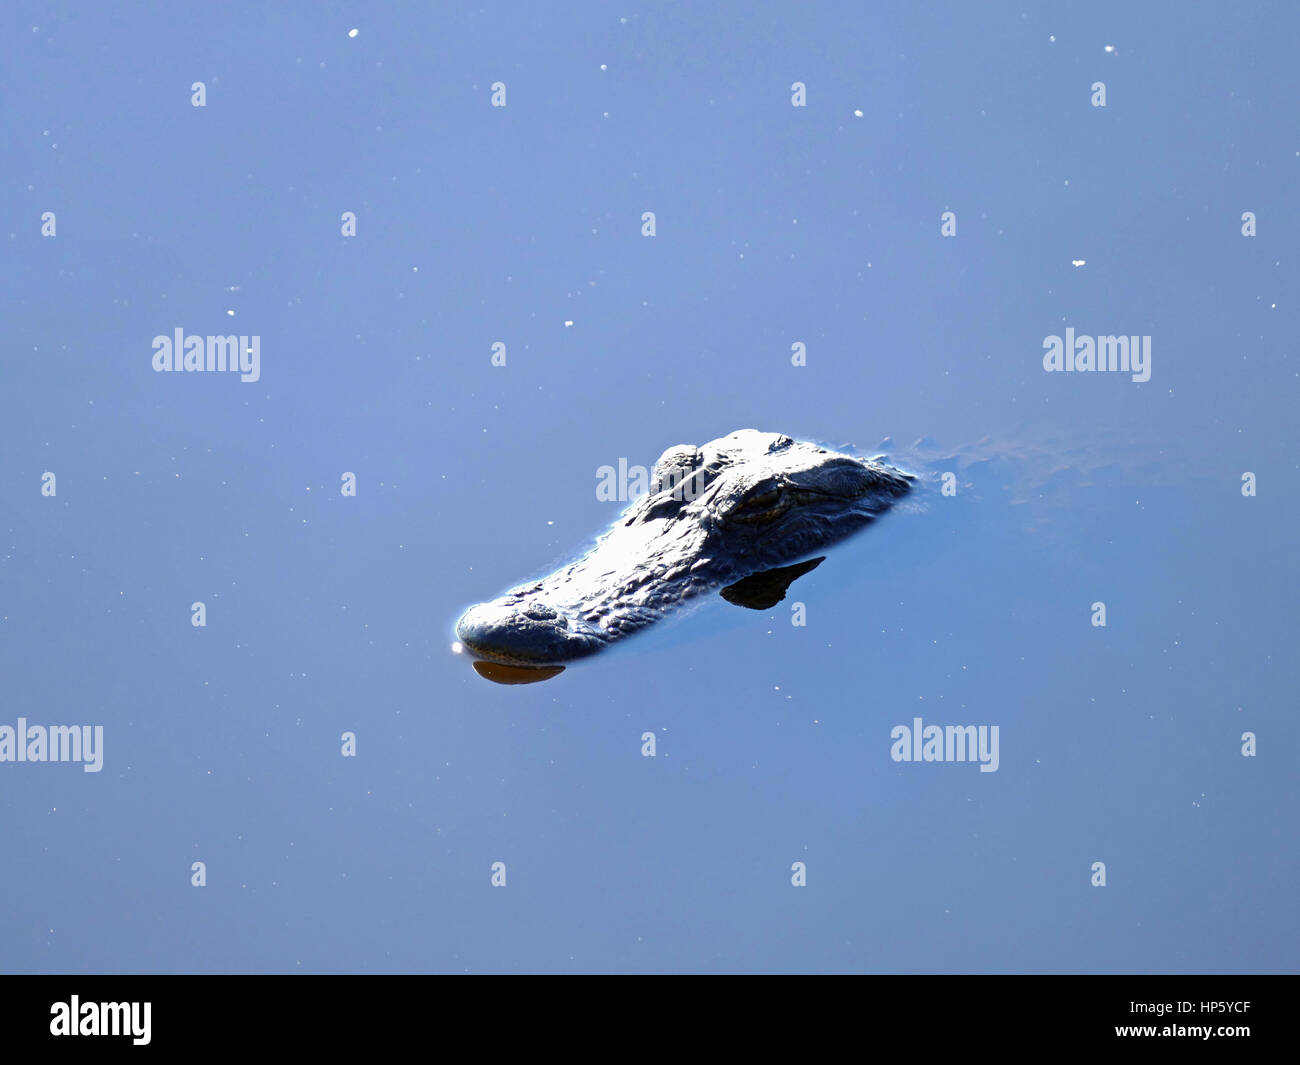 Petite tête d'Alligator juste au-dessus de la ligne d'eau, parc d'état de Paynes Prairie Preserve, Gainesville, Floride, USA Banque D'Images